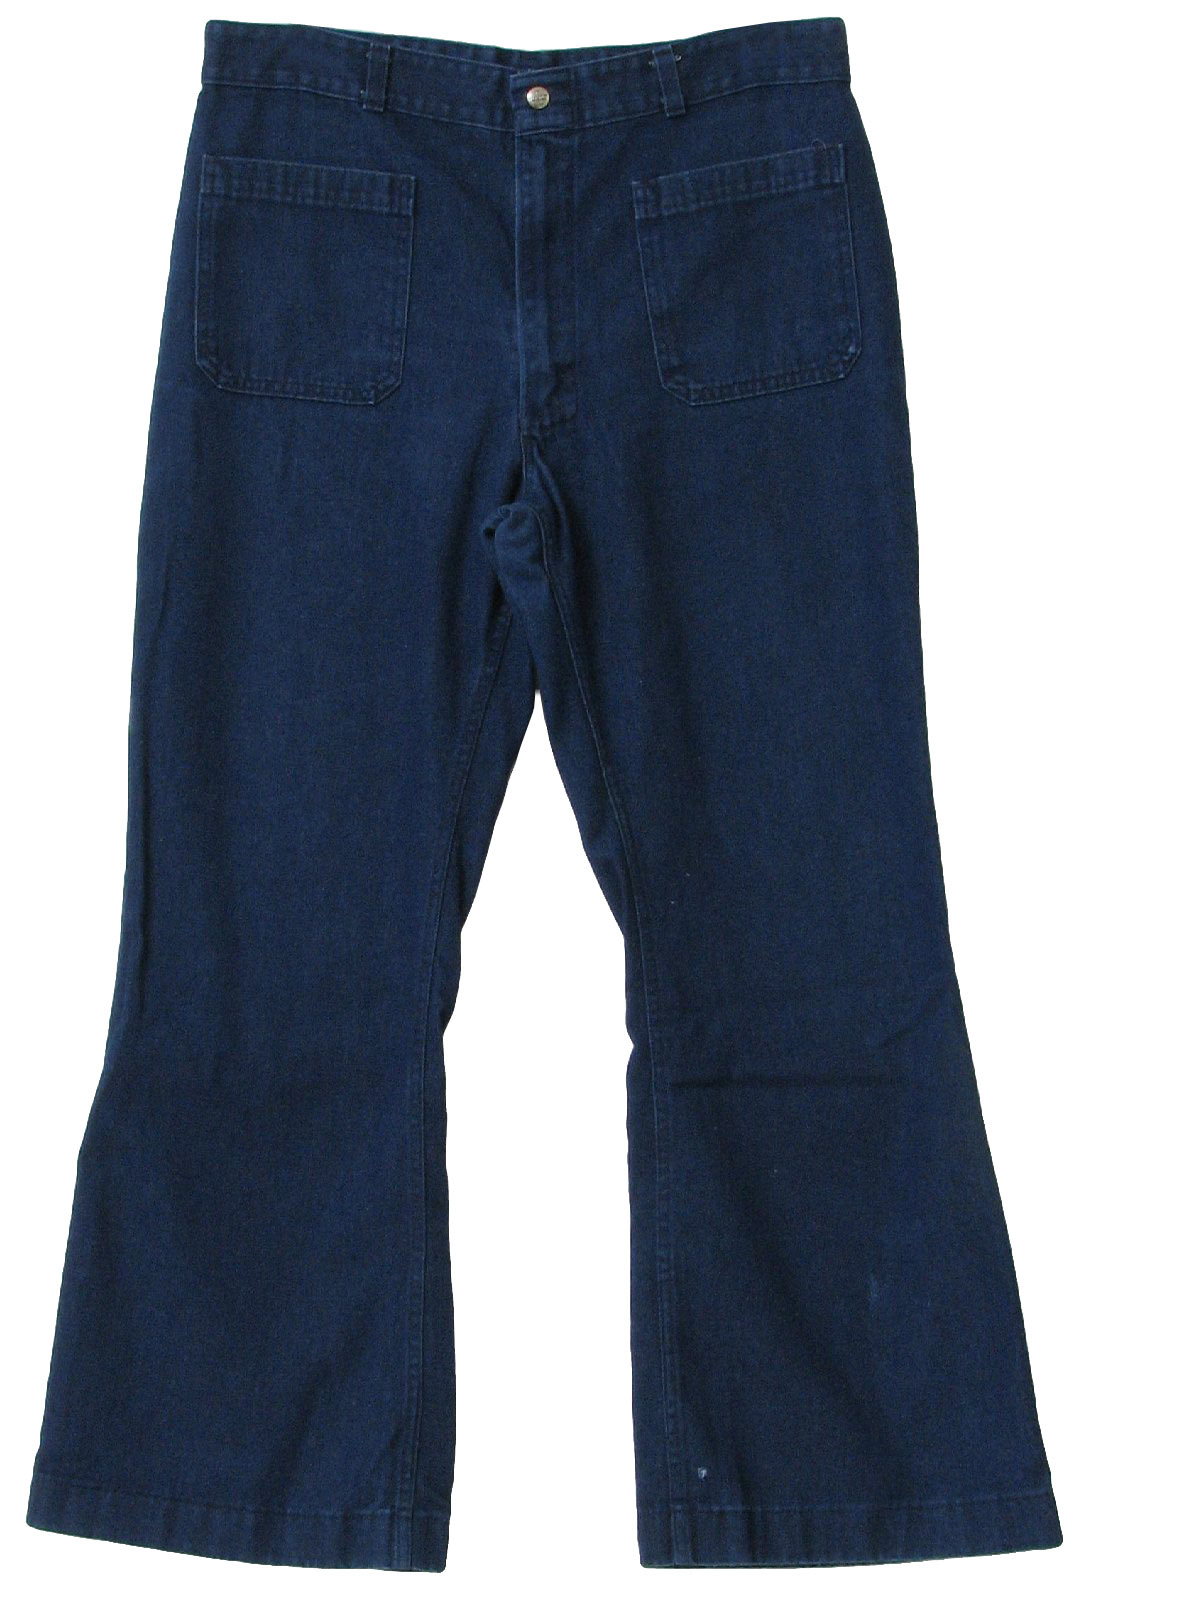 Vintage Seafarer 70's Bellbottom Pants: 70s -Seafarer- Mens blue denim ...